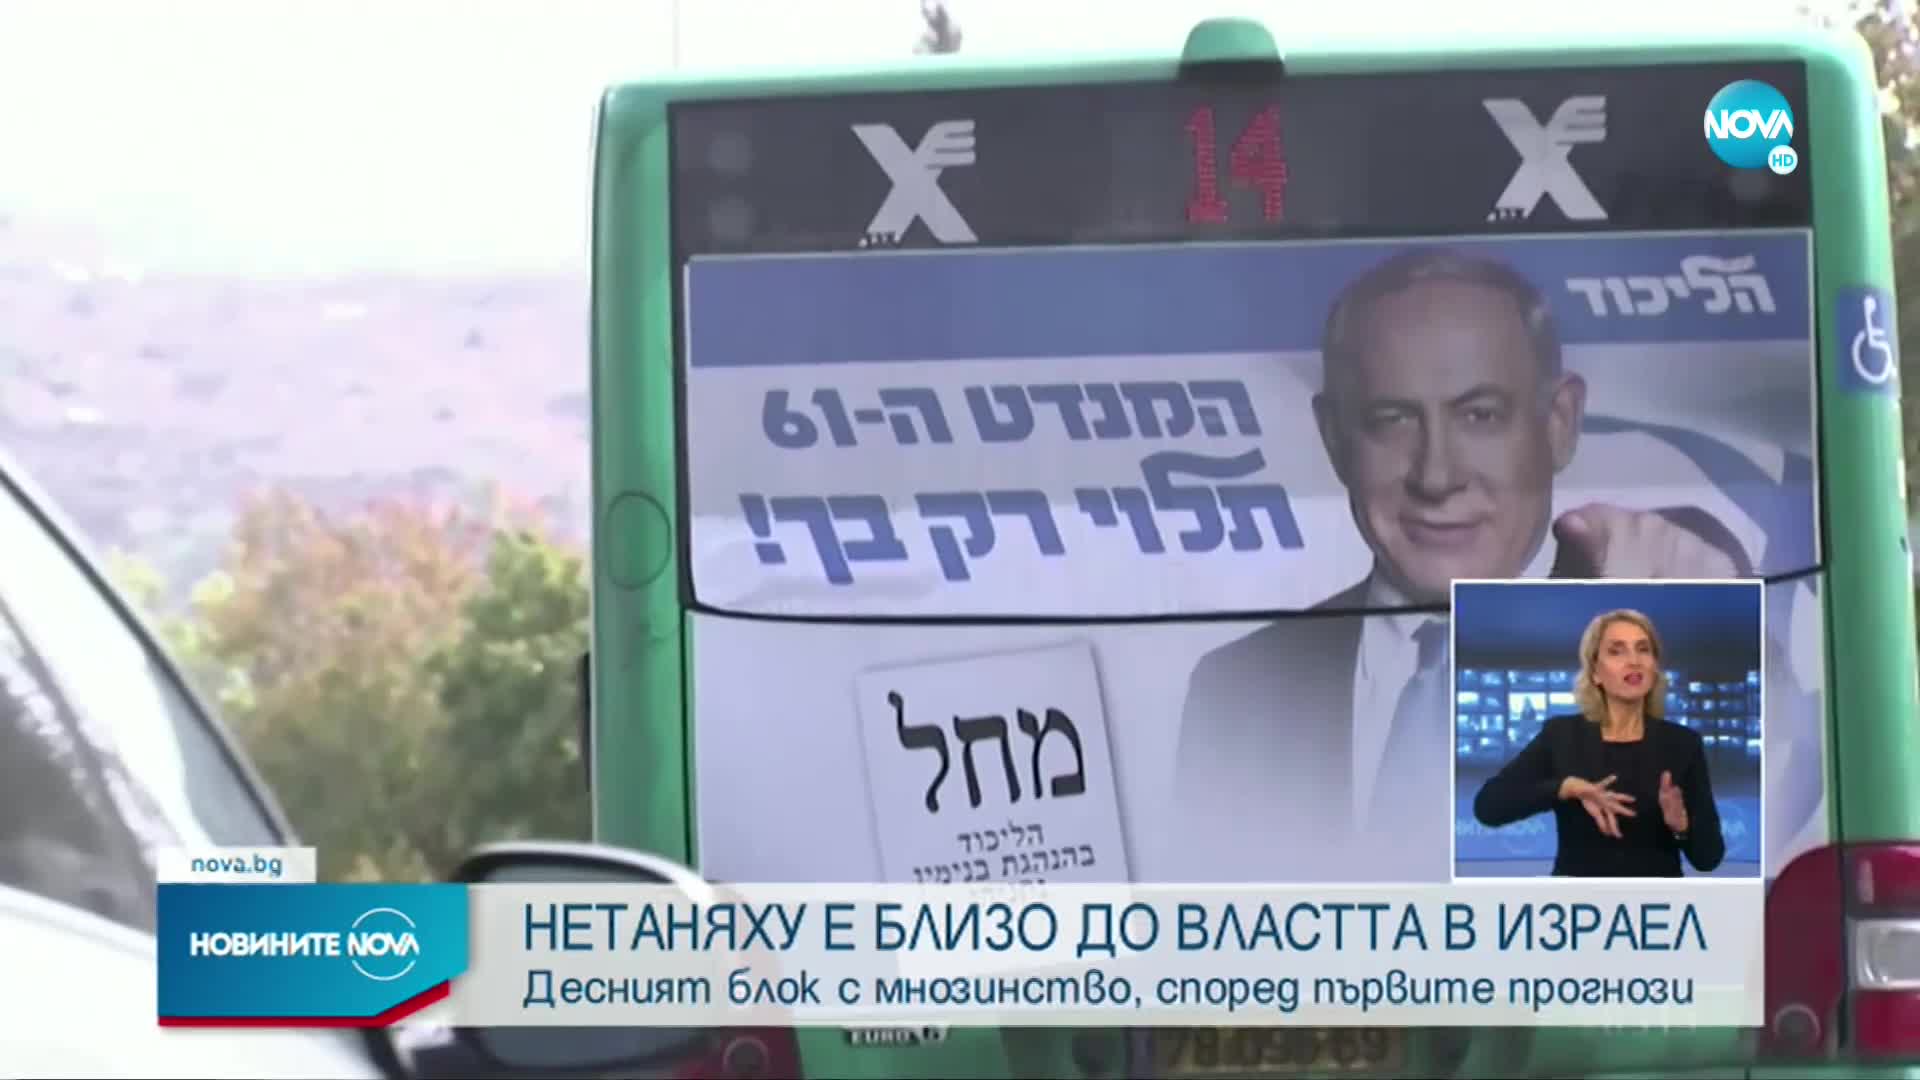 Според екзит пола в Израел: Нетаняху печели изборите